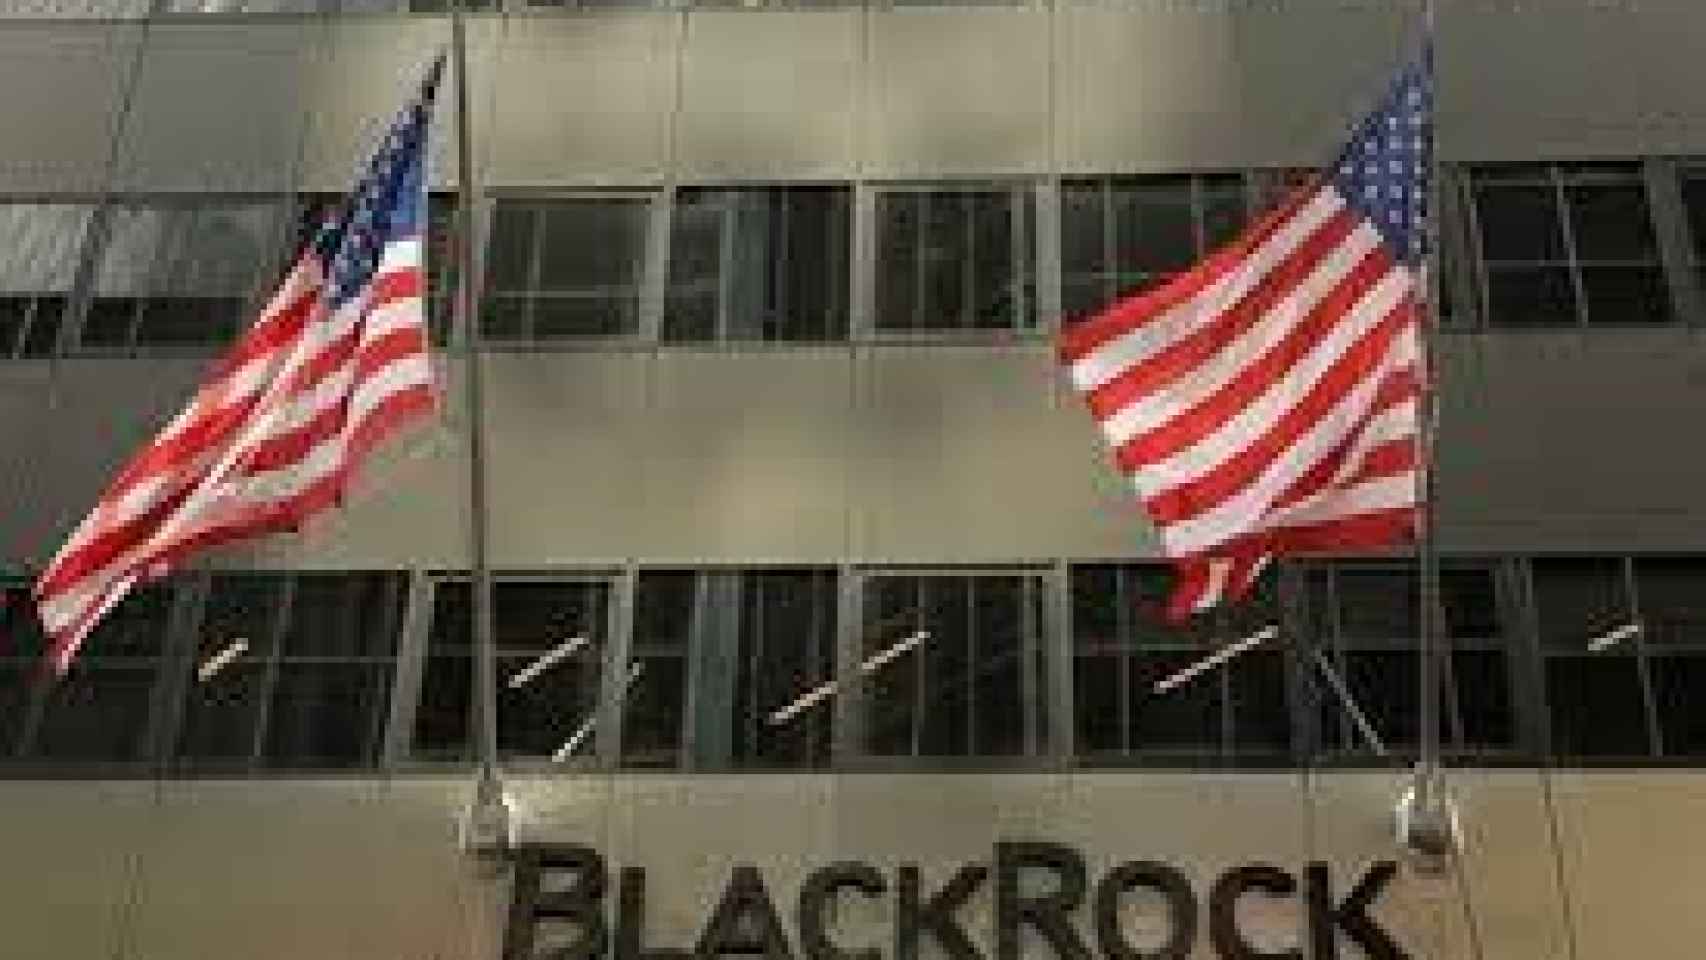 Edificio de BlackRock en EEUU.